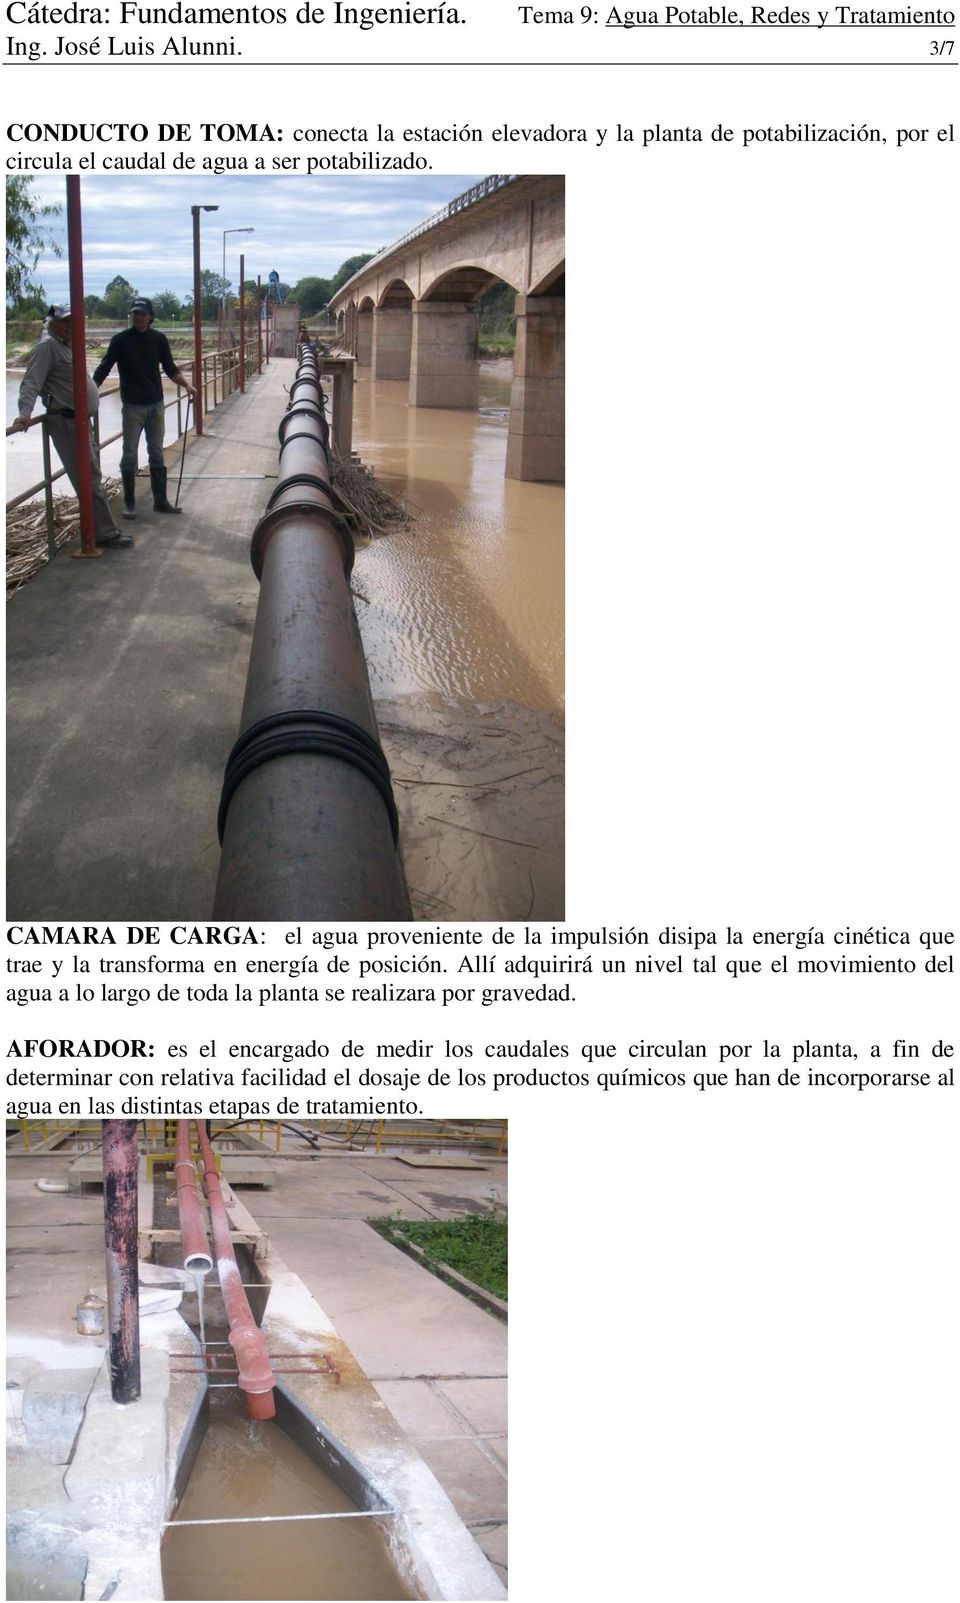 CAMARA DE CARGA: el agua proveniente de la impulsión disipa la energía cinética que trae y la transforma en energía de posición.